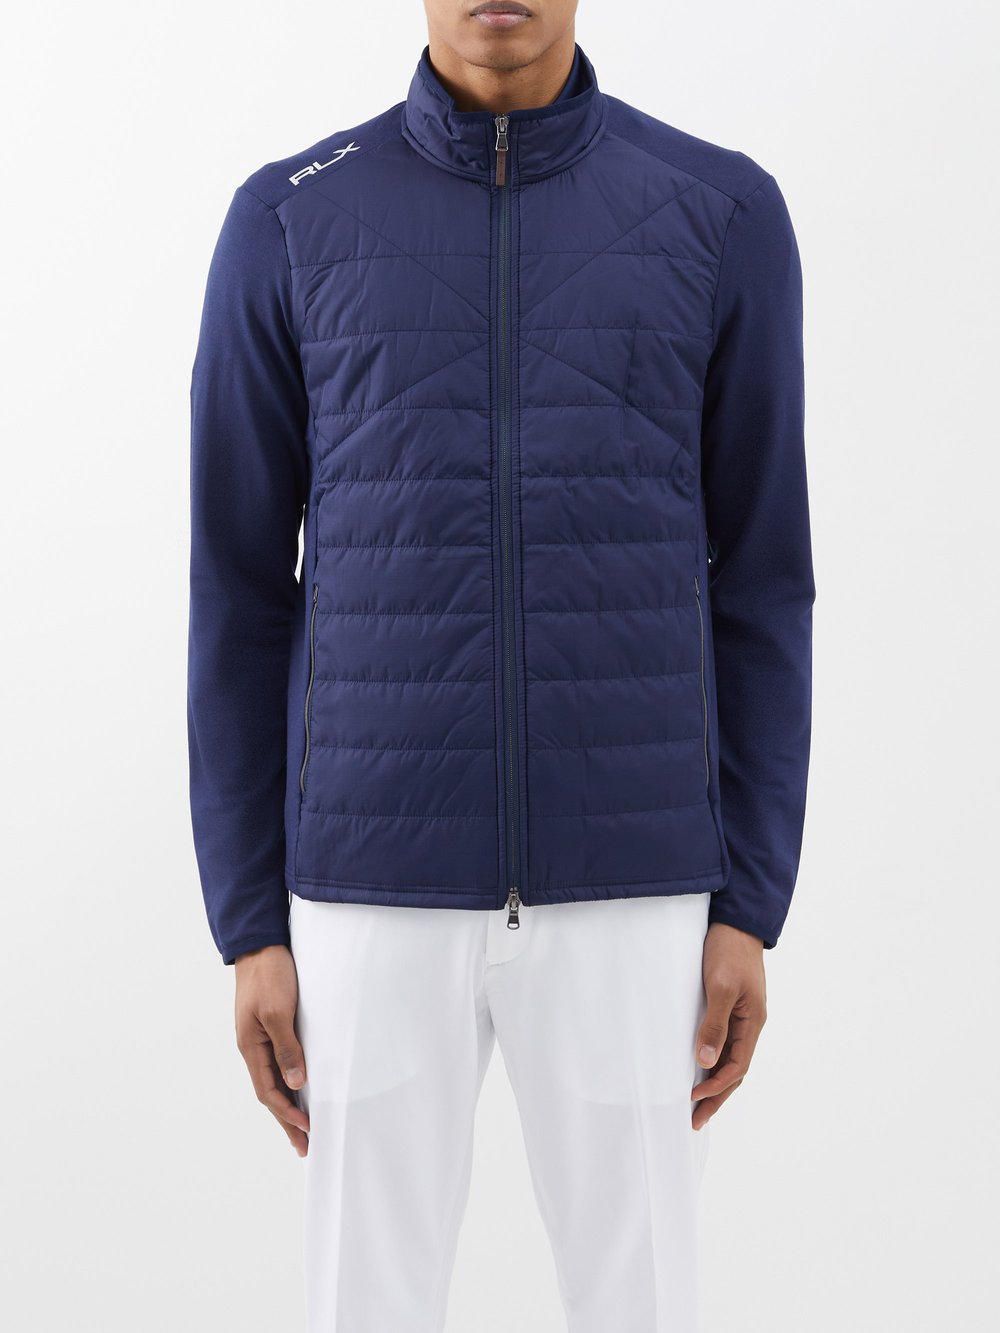 Гибридная стеганая куртка Polo Ralph Lauren, синий ткань темно синяя марлевка из шерсти